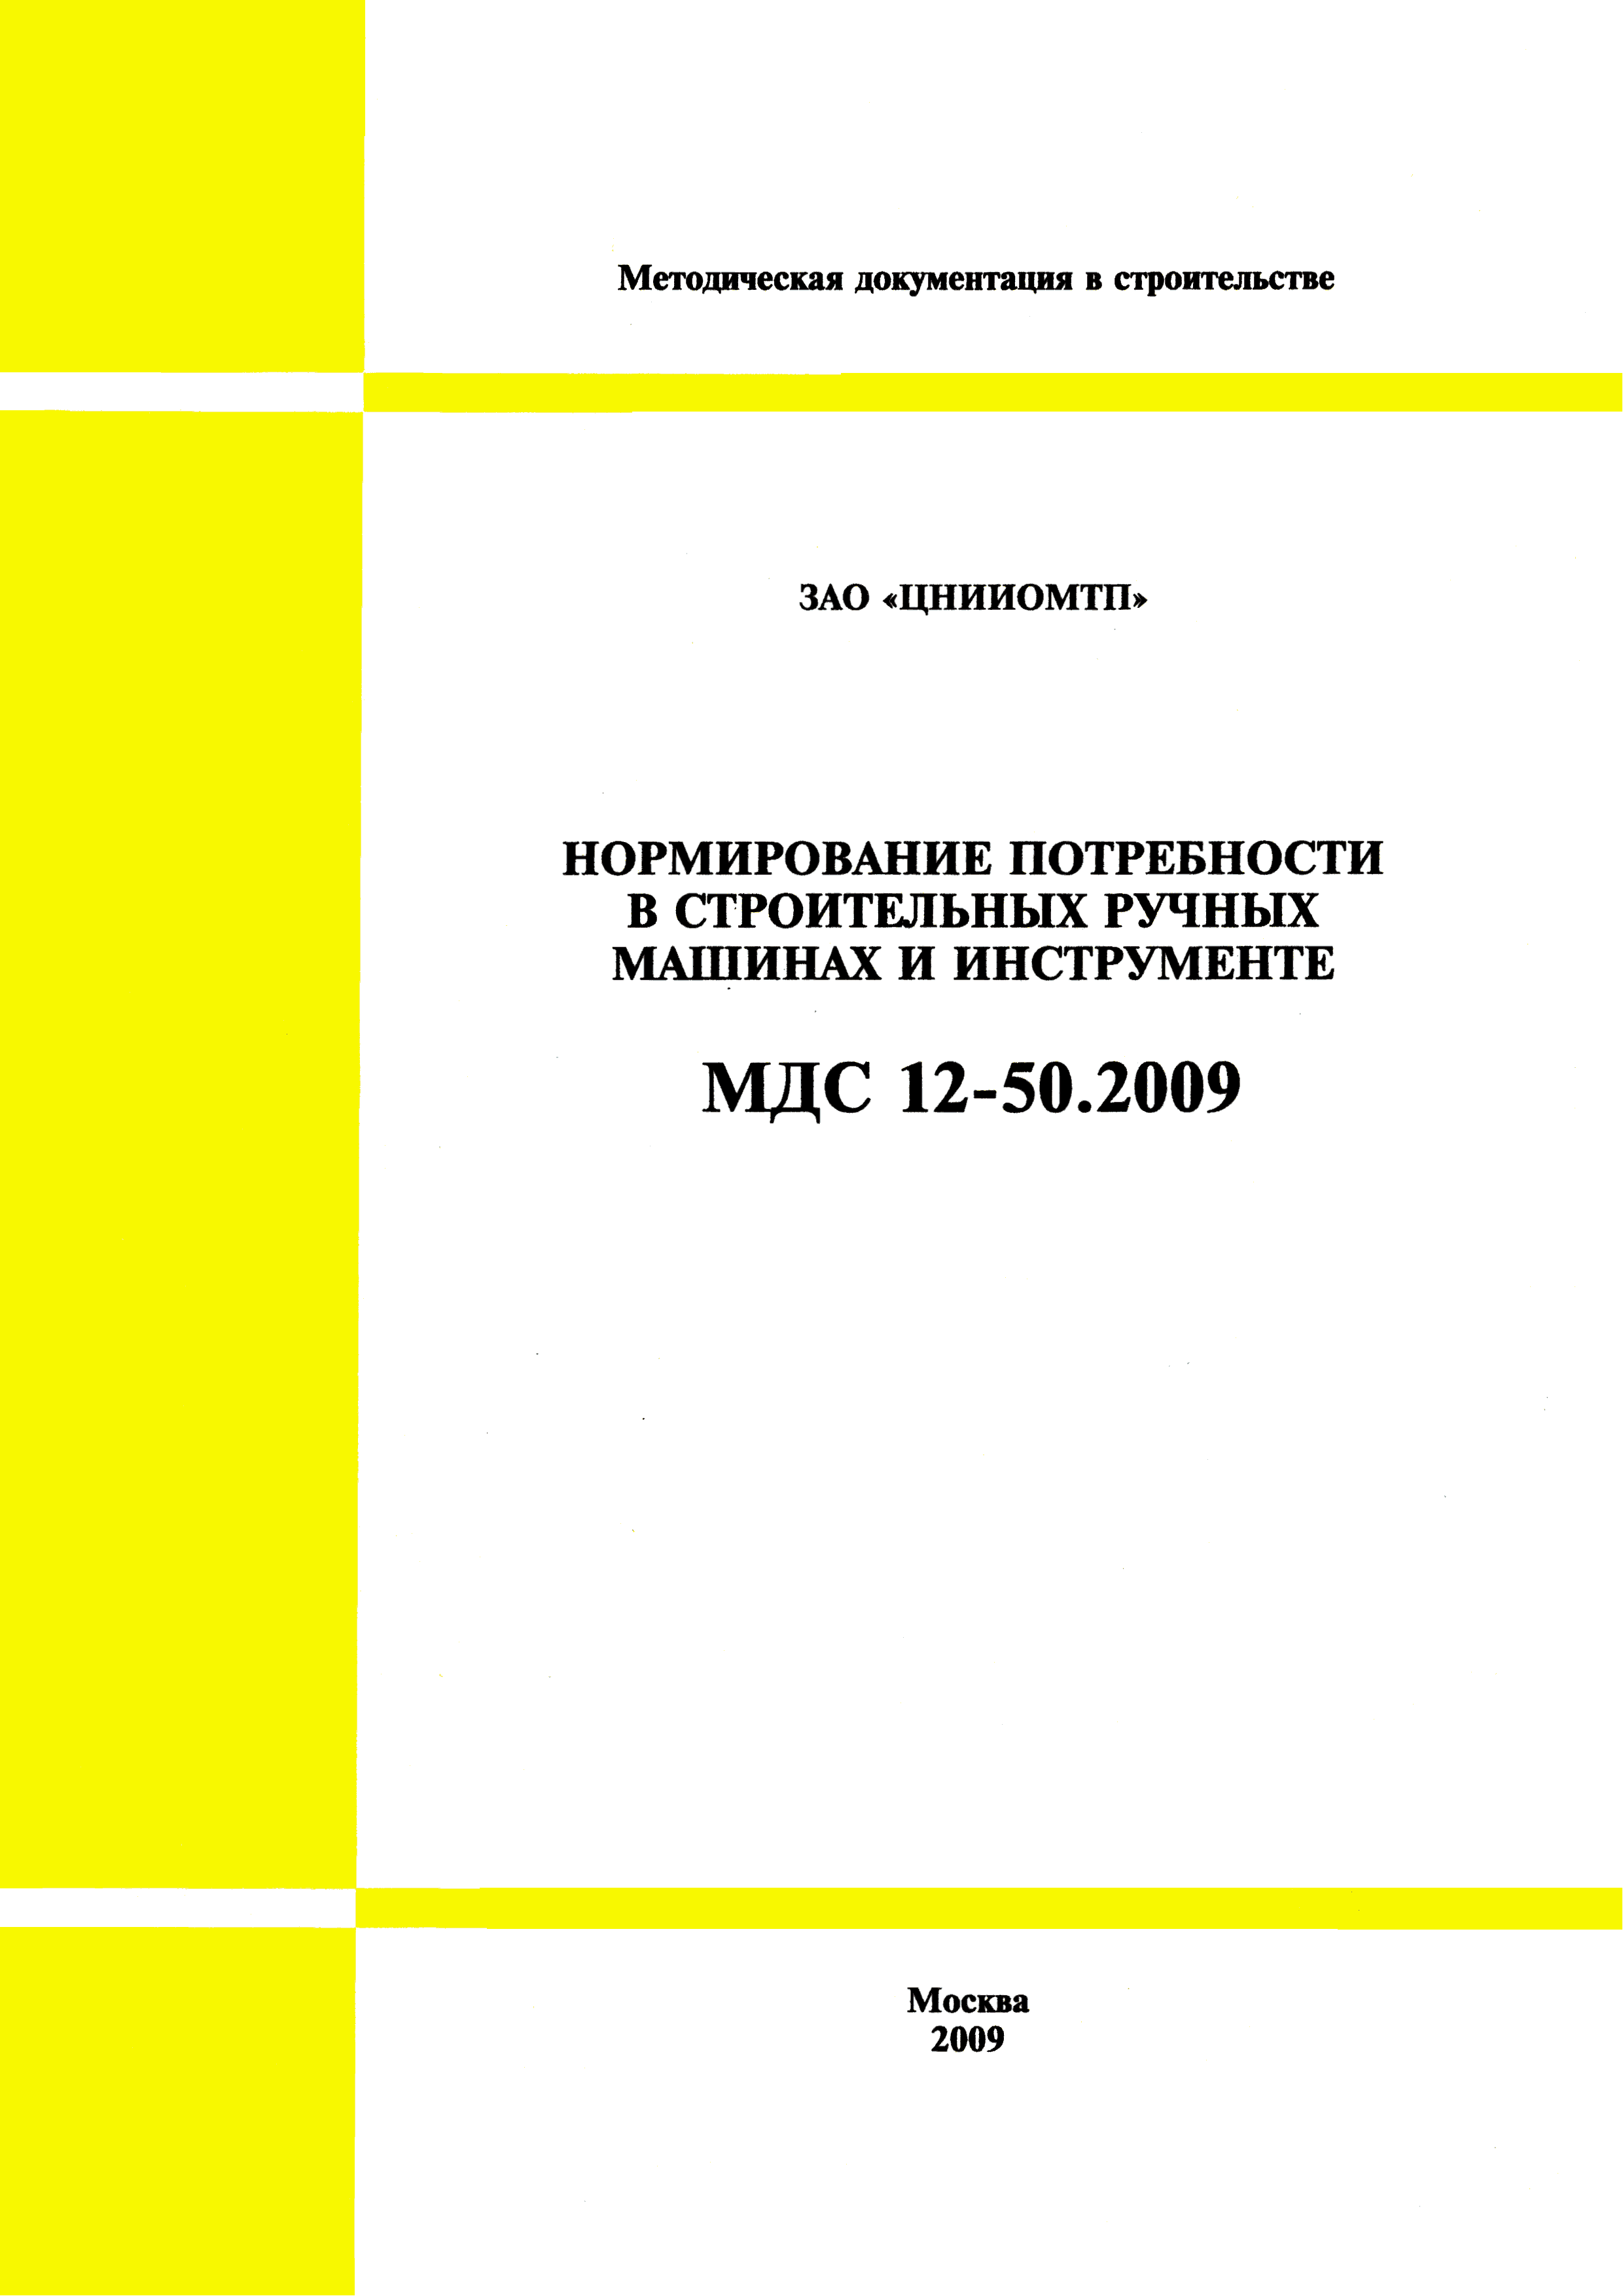 МДС 12-50.2009